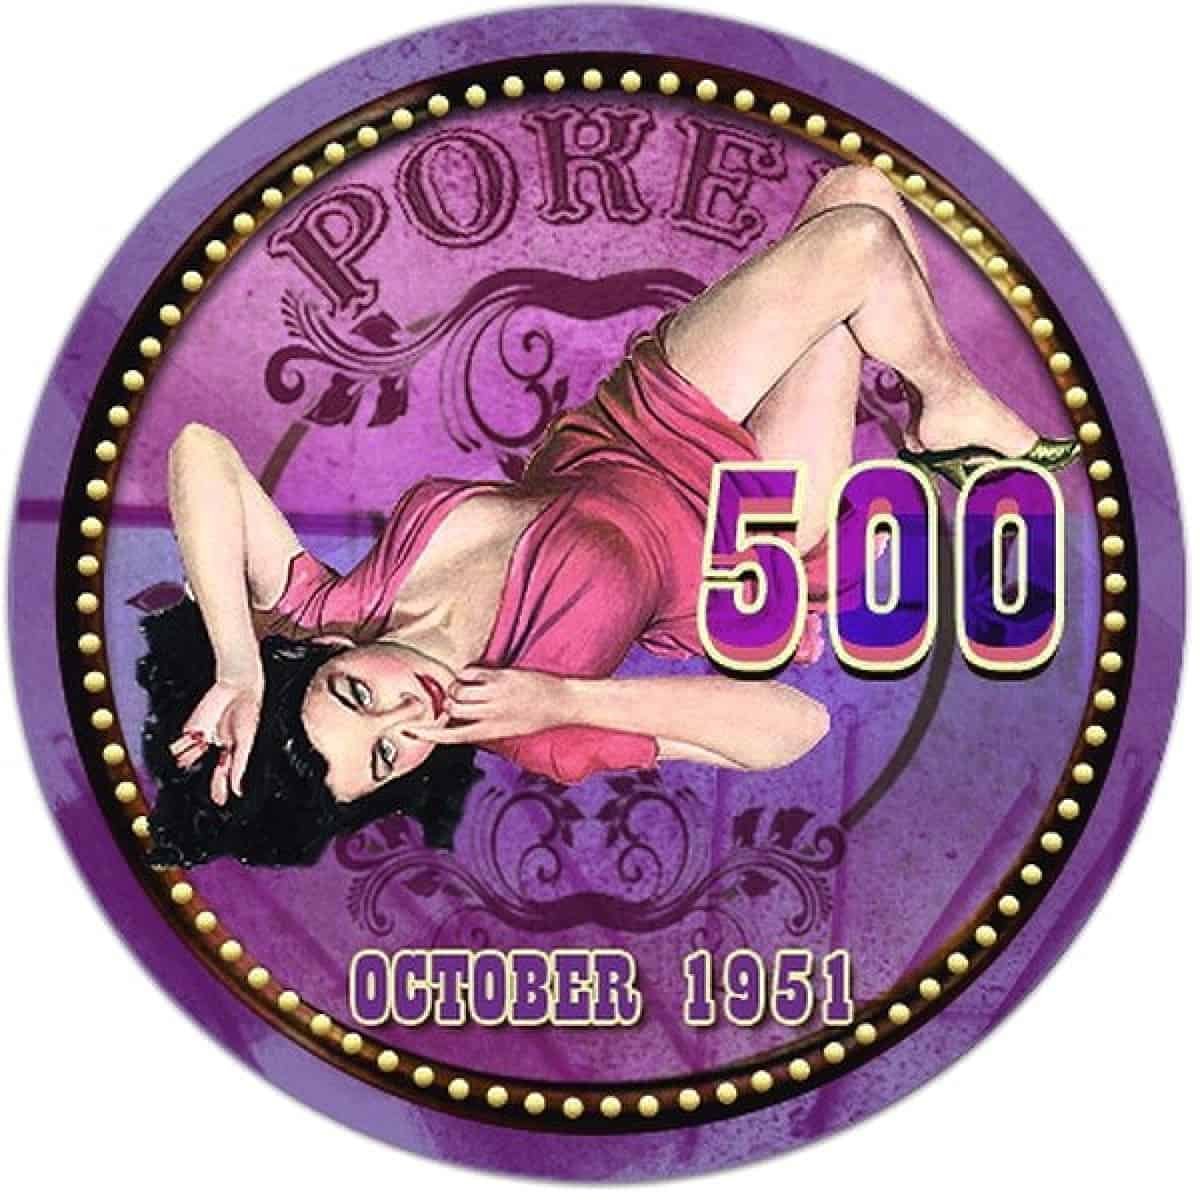 Cash Game, żeton pokerowy, October 1951, nominał 500